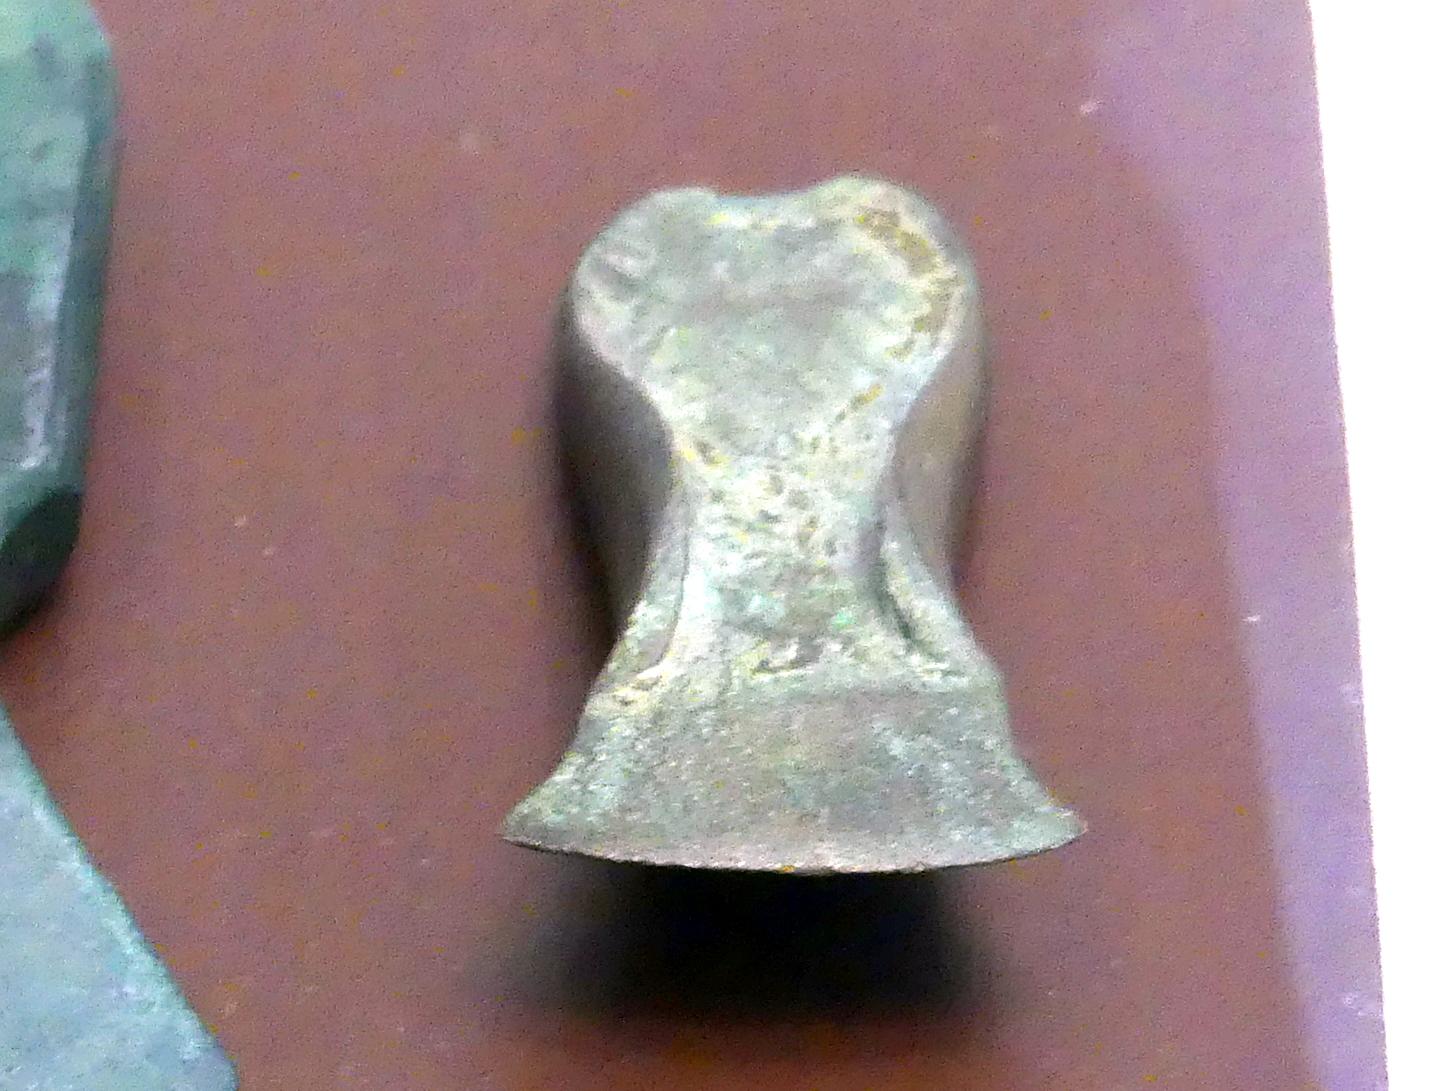 Randleistenbeil, Mittlere Bronzezeit, 3000 - 1300 v. Chr., Bild 1/2